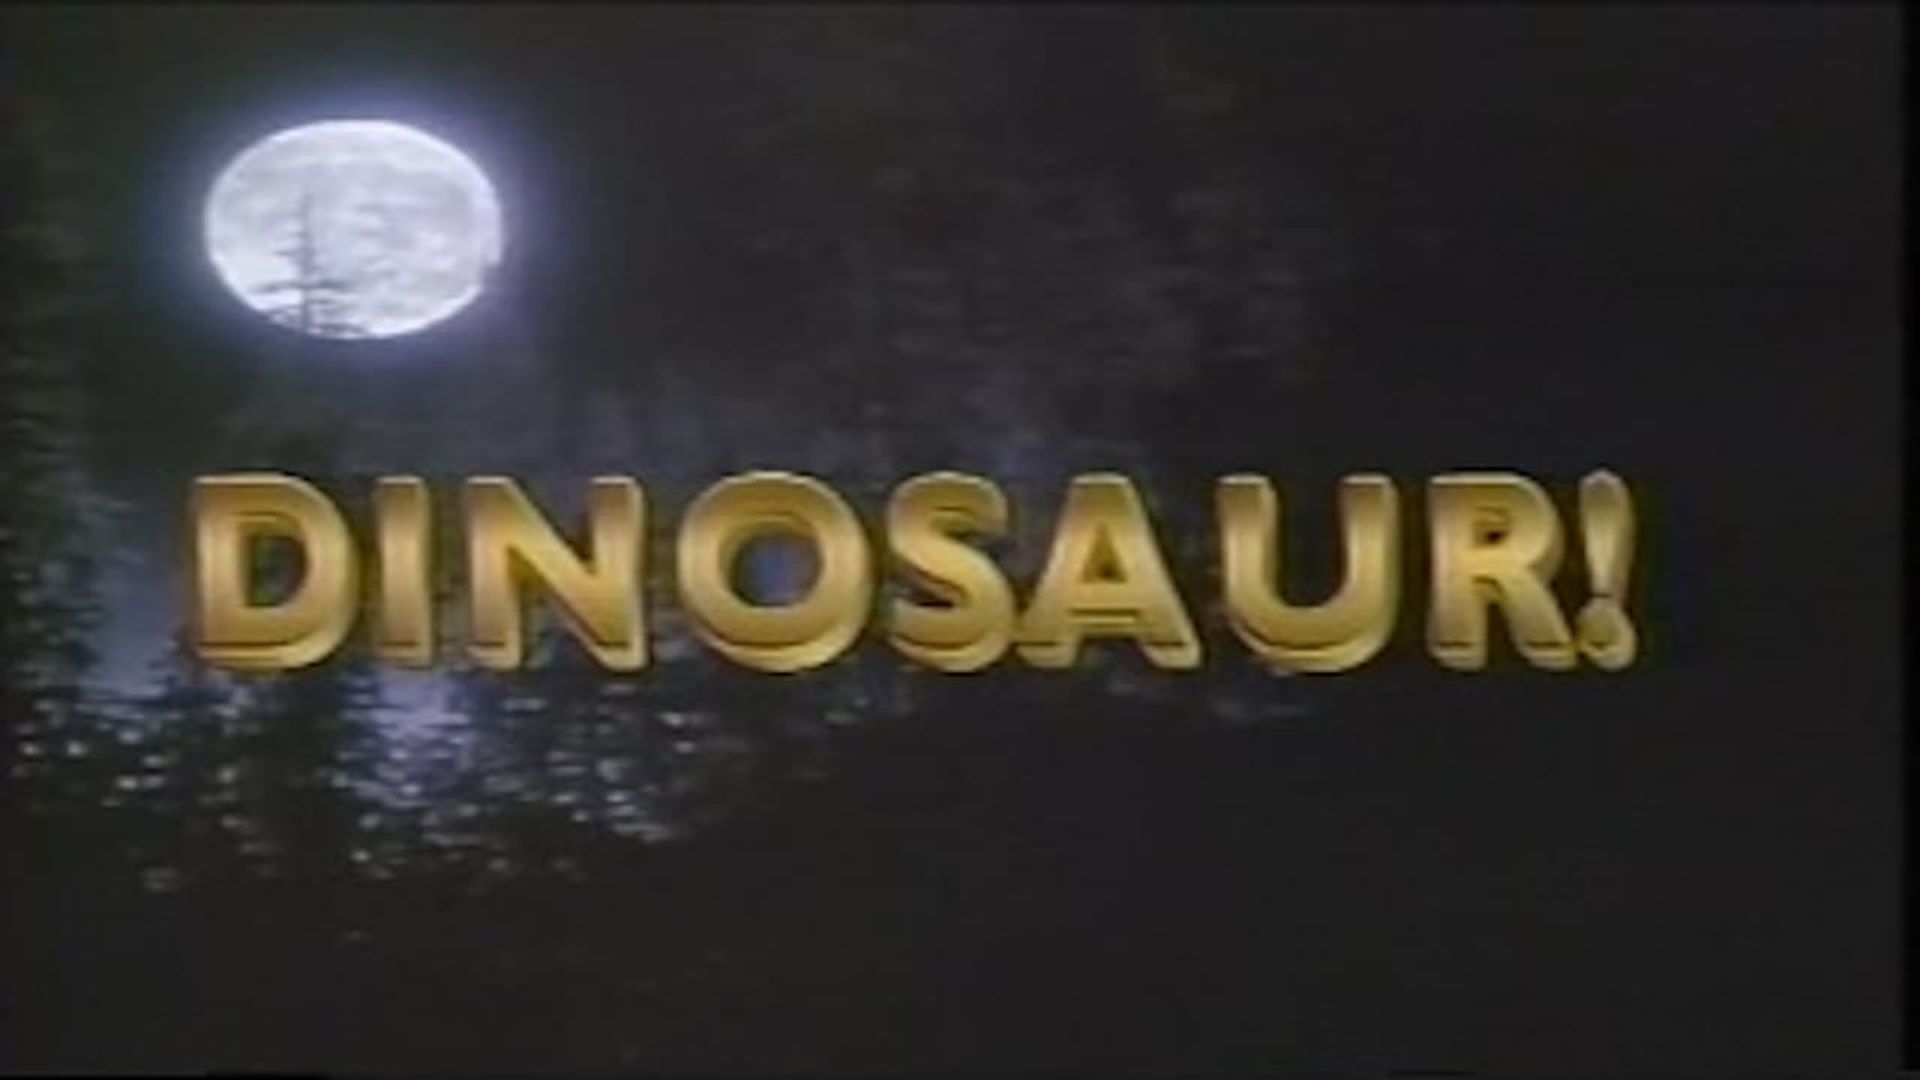 Dinosaur! background